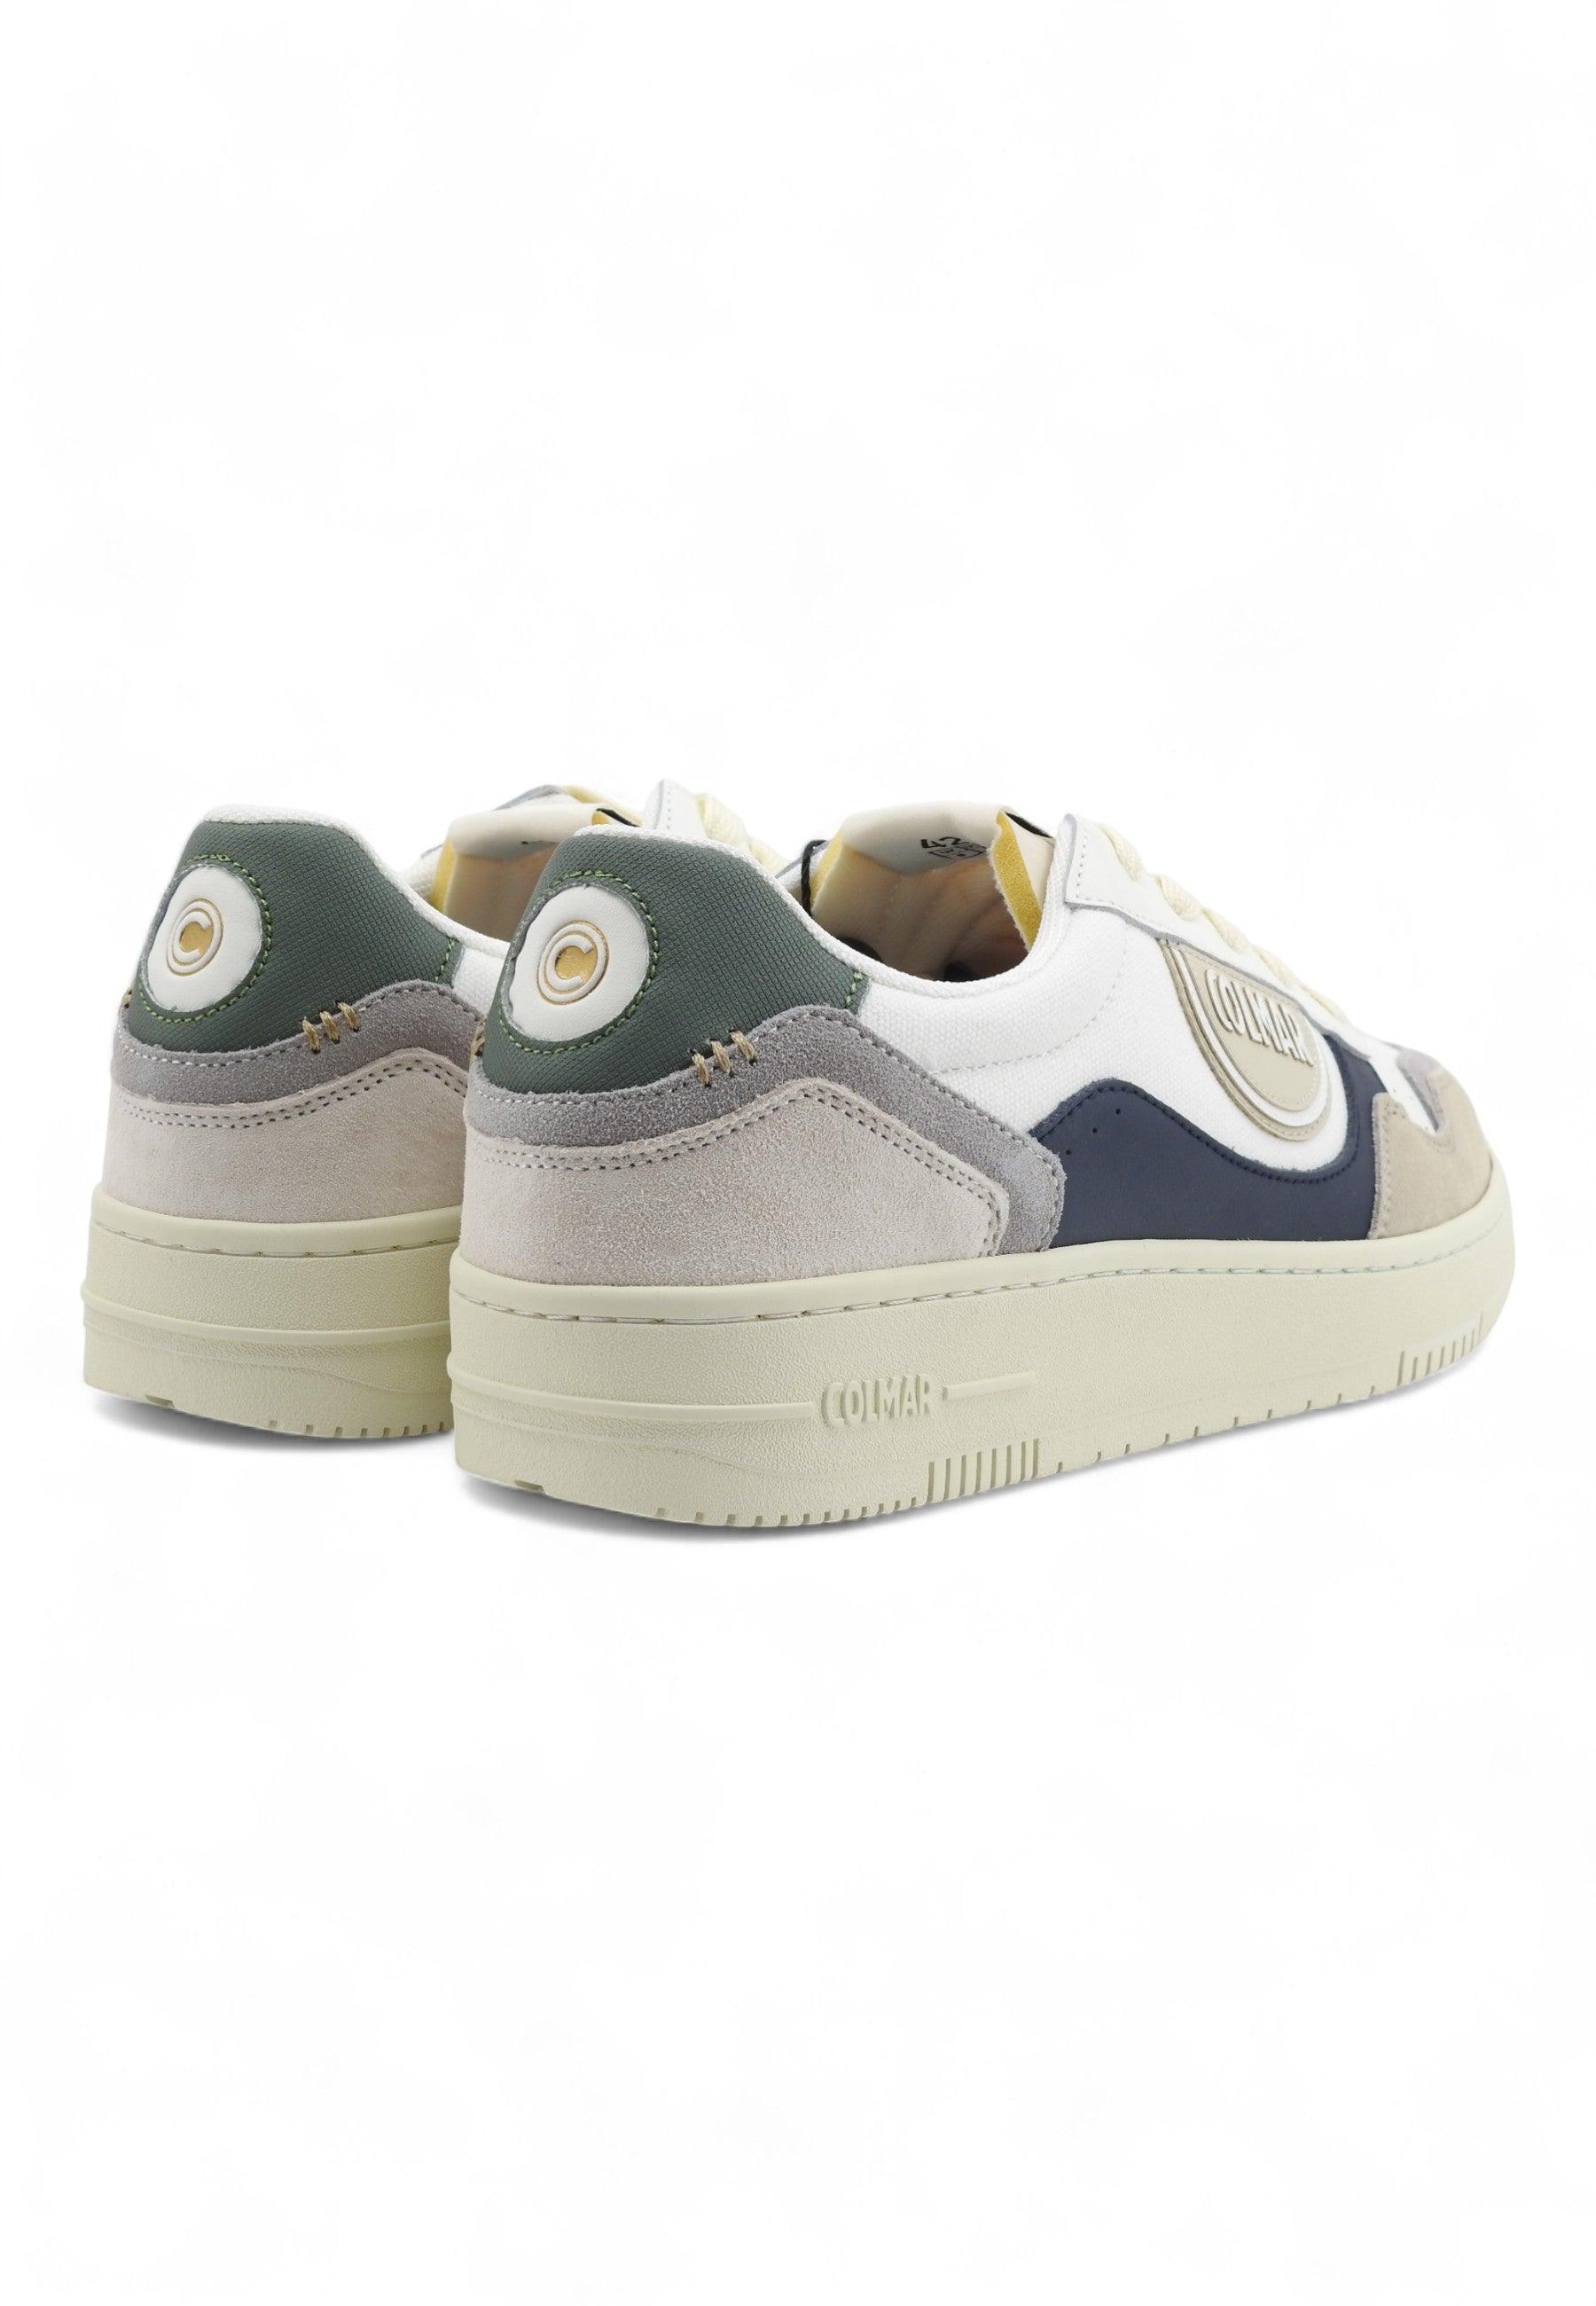 COLMAR Sneaker Uomo White Navy Sage Green AUSTIN BRIEF - Sandrini Calzature e Abbigliamento